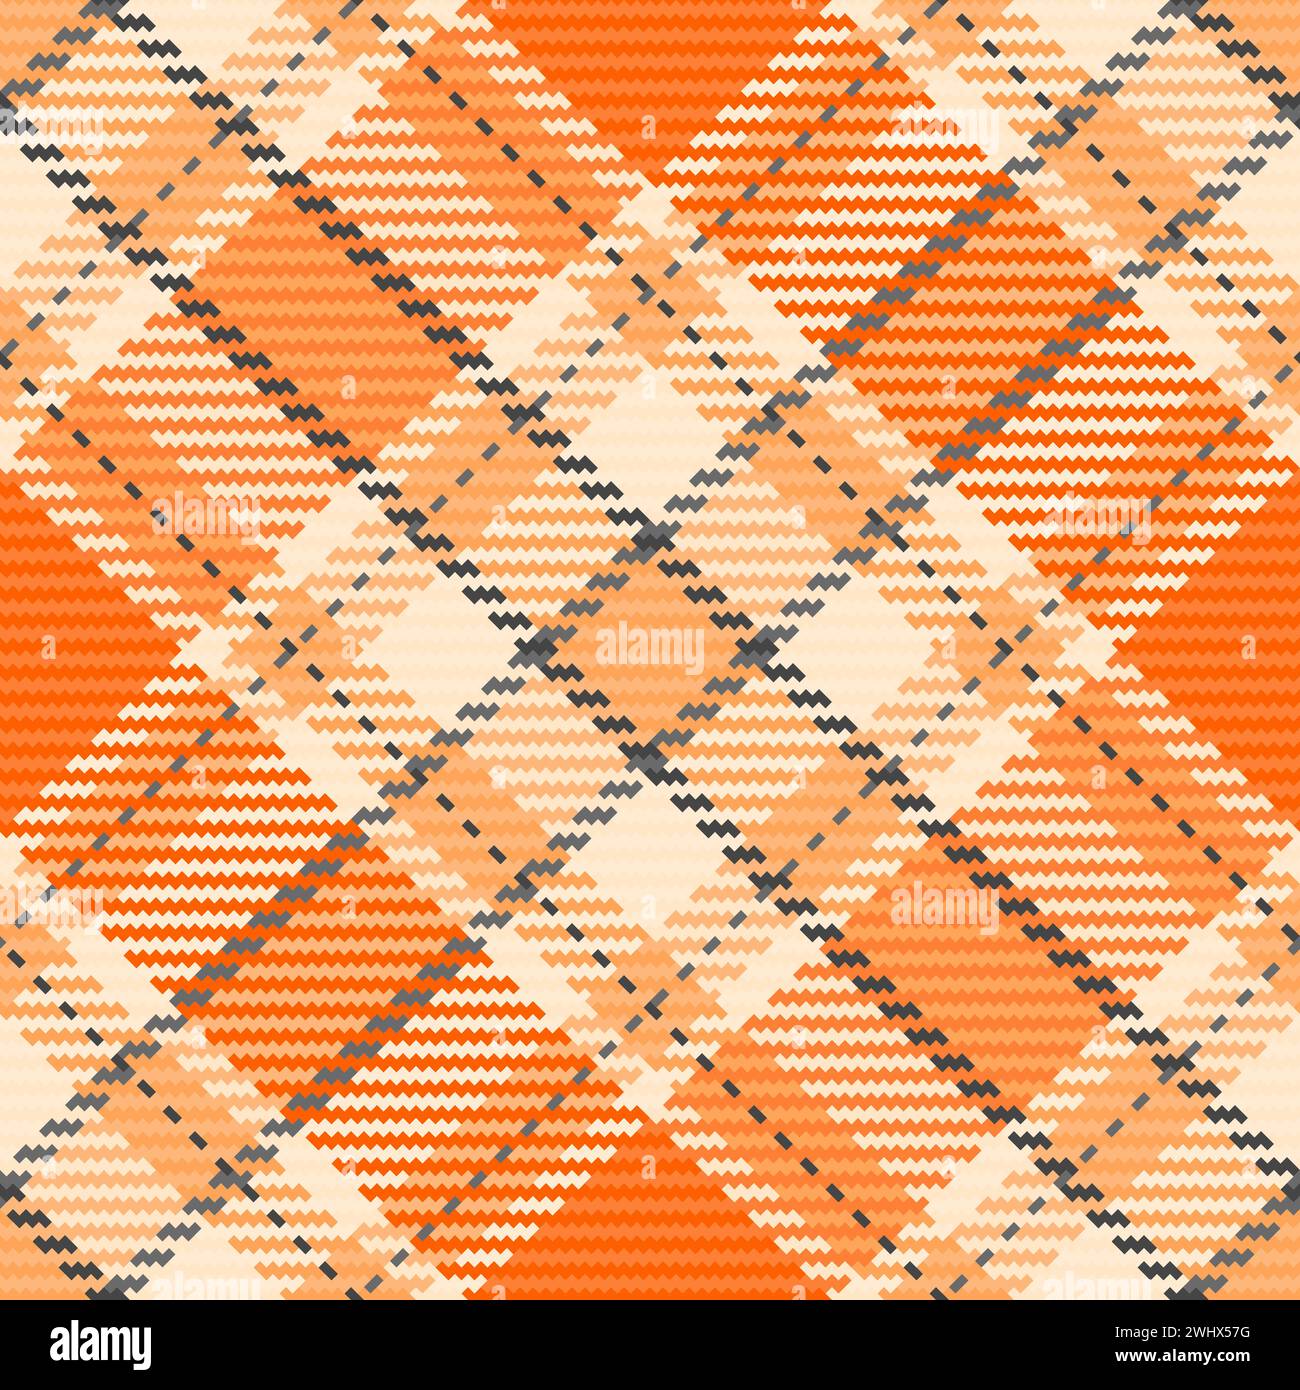 Lateinisches kariertes Hintergrundtextil, Farbvektor-Check nahtlos. Maschinelle Textur Stoffmuster Tartan in Orange und Papaya-Peitschenfarbe. Stock Vektor